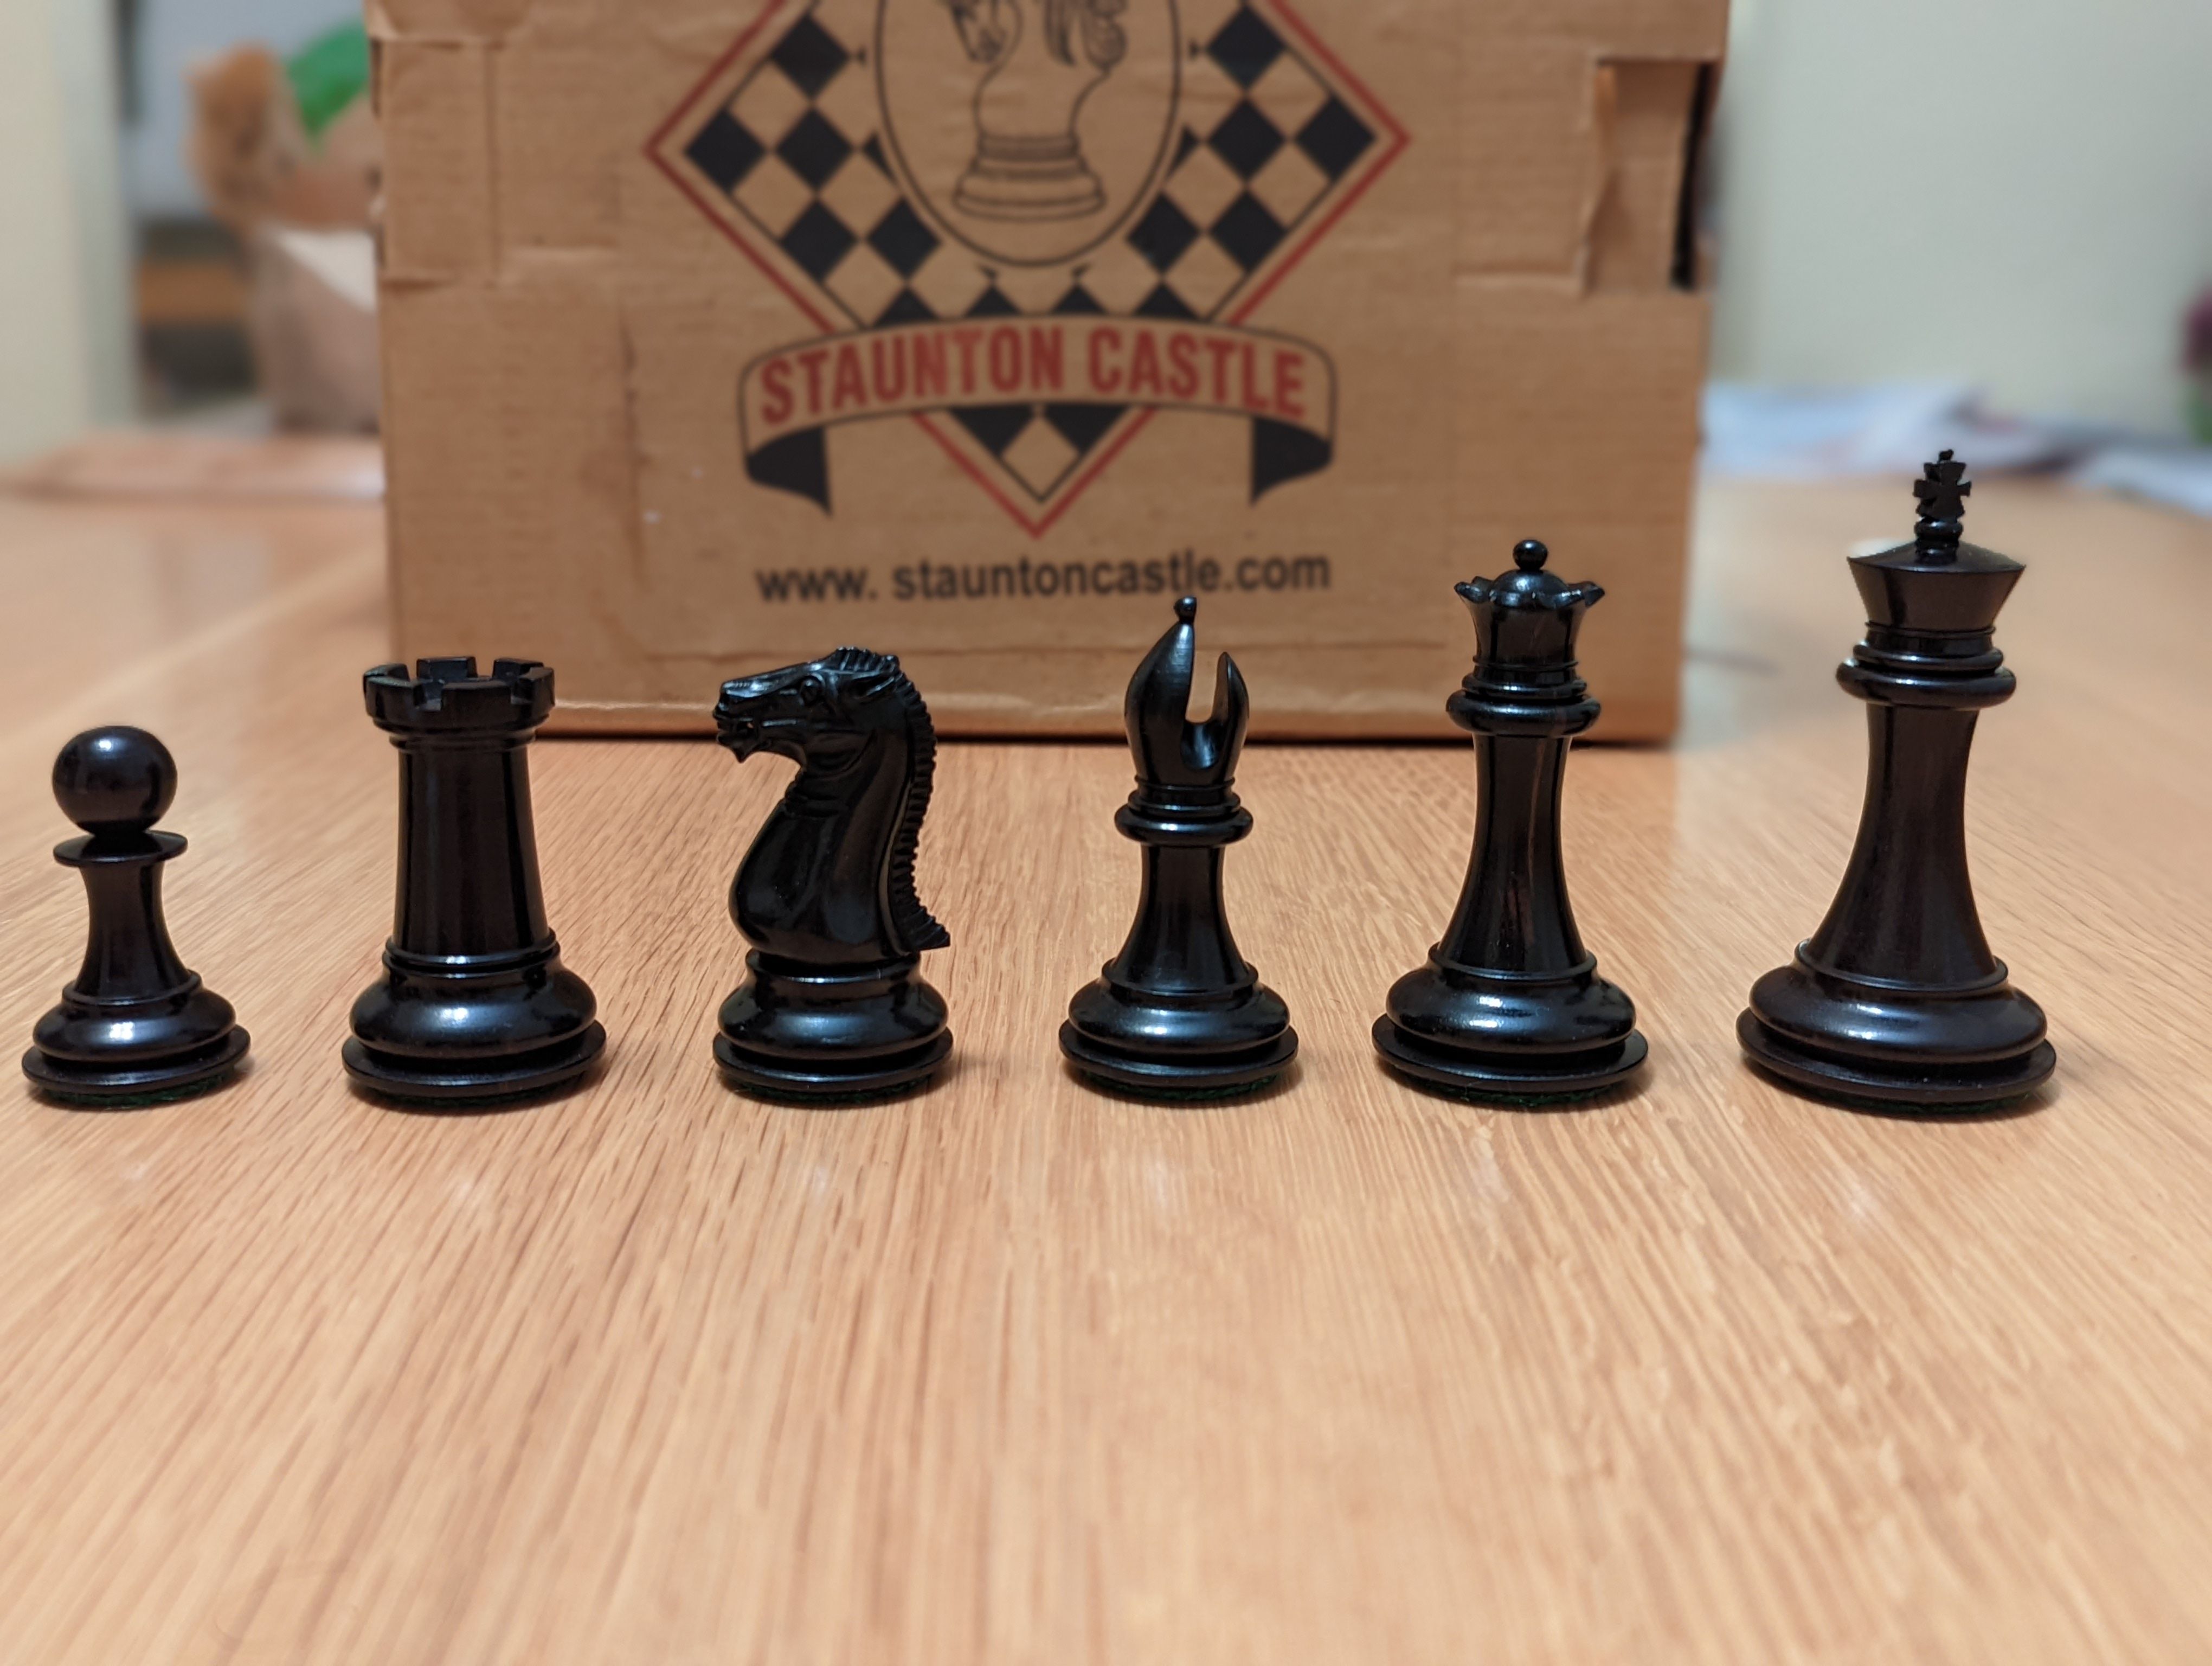 Chess Tales: Queen's Gambit: Move Order Refinement